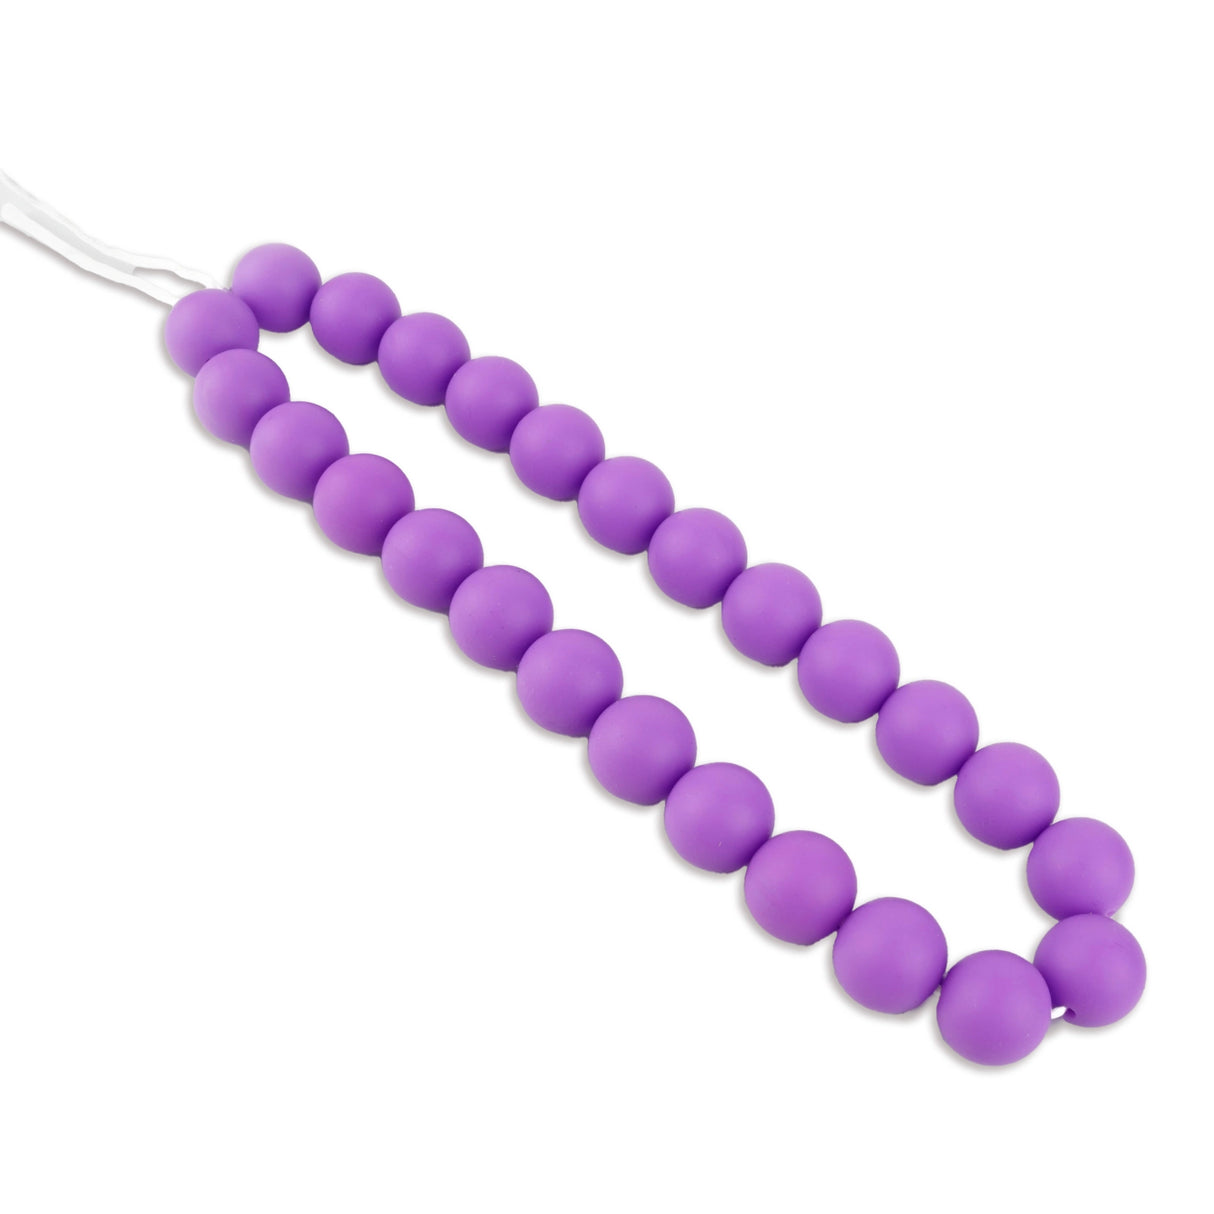 silicone bead round medium purple